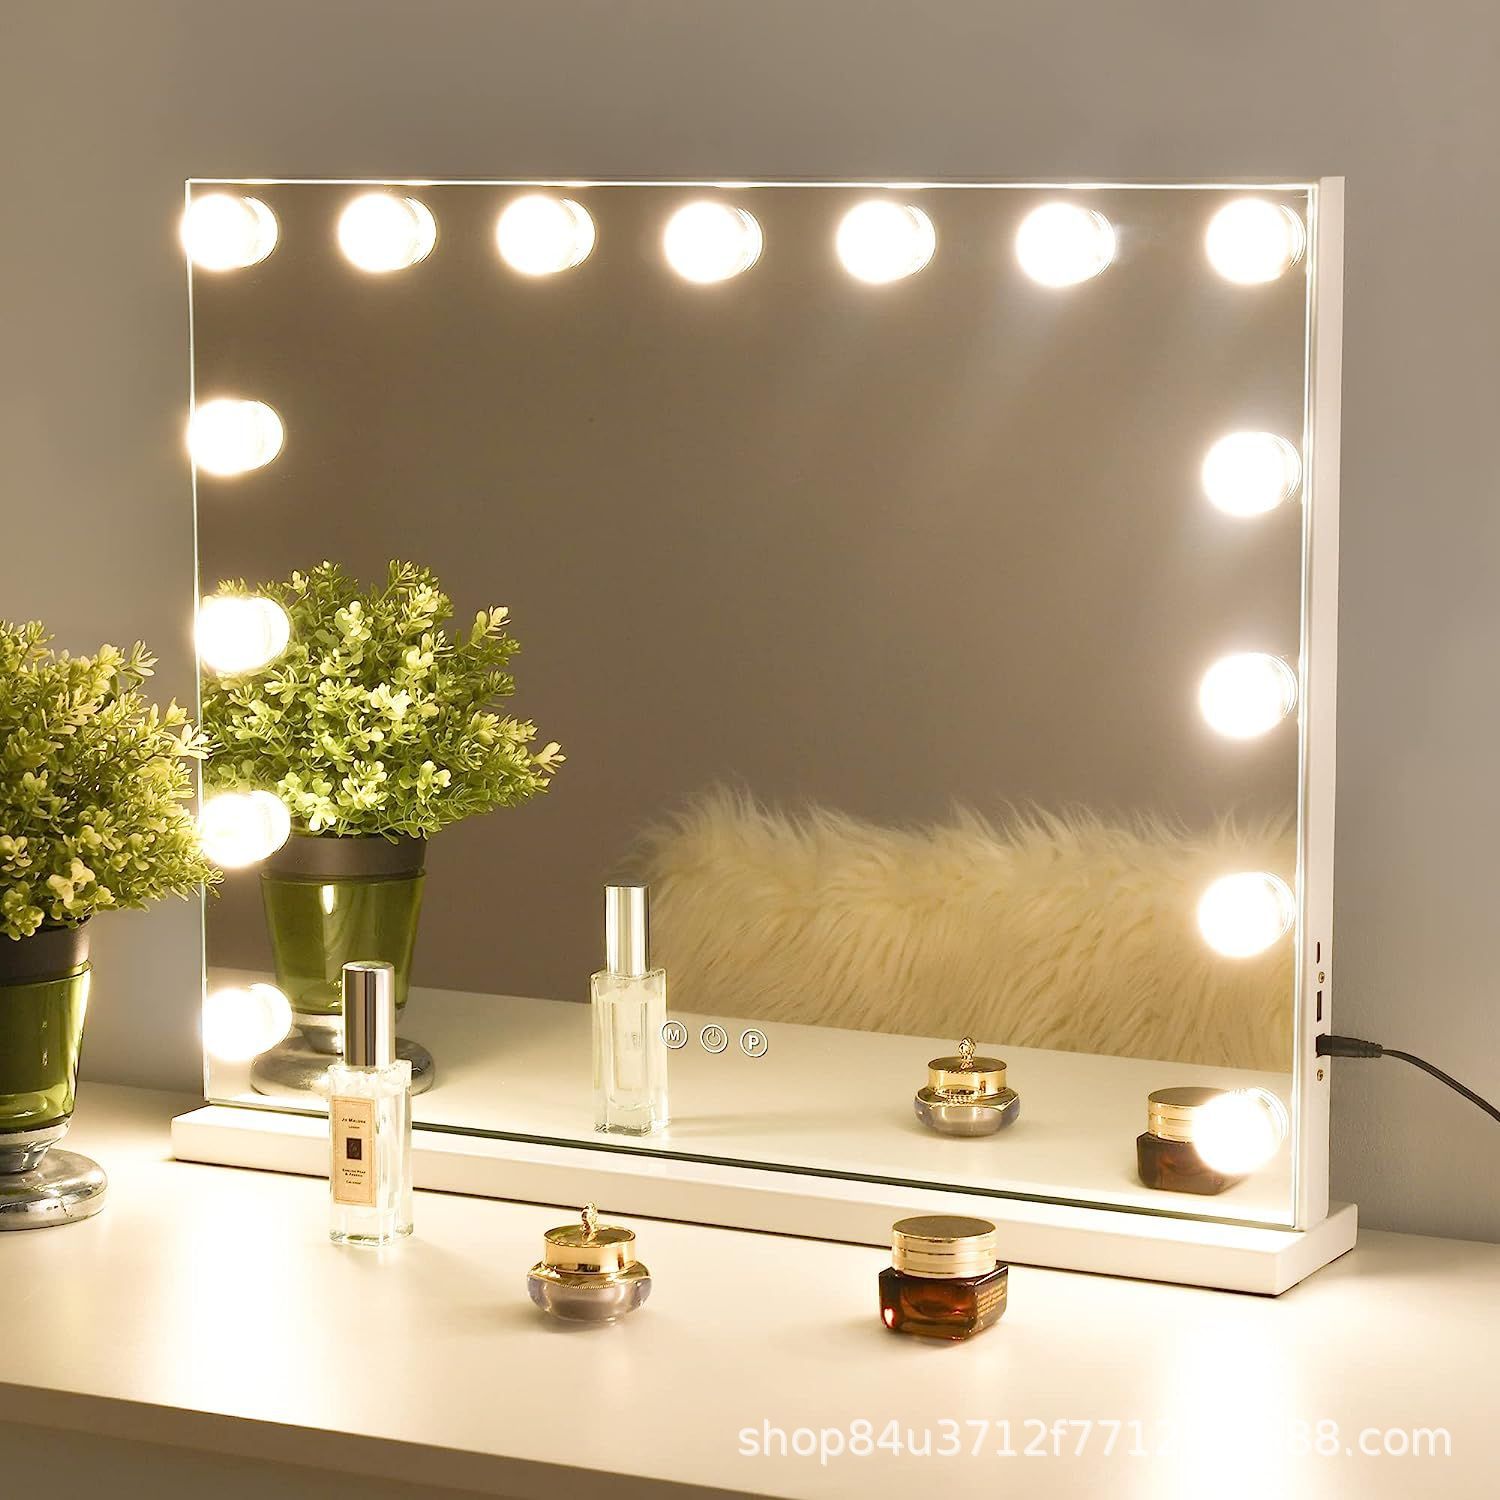 好莱坞带15个LED灯化妆镜公主梳便携化妆镜 网红同款带灯化妆镜